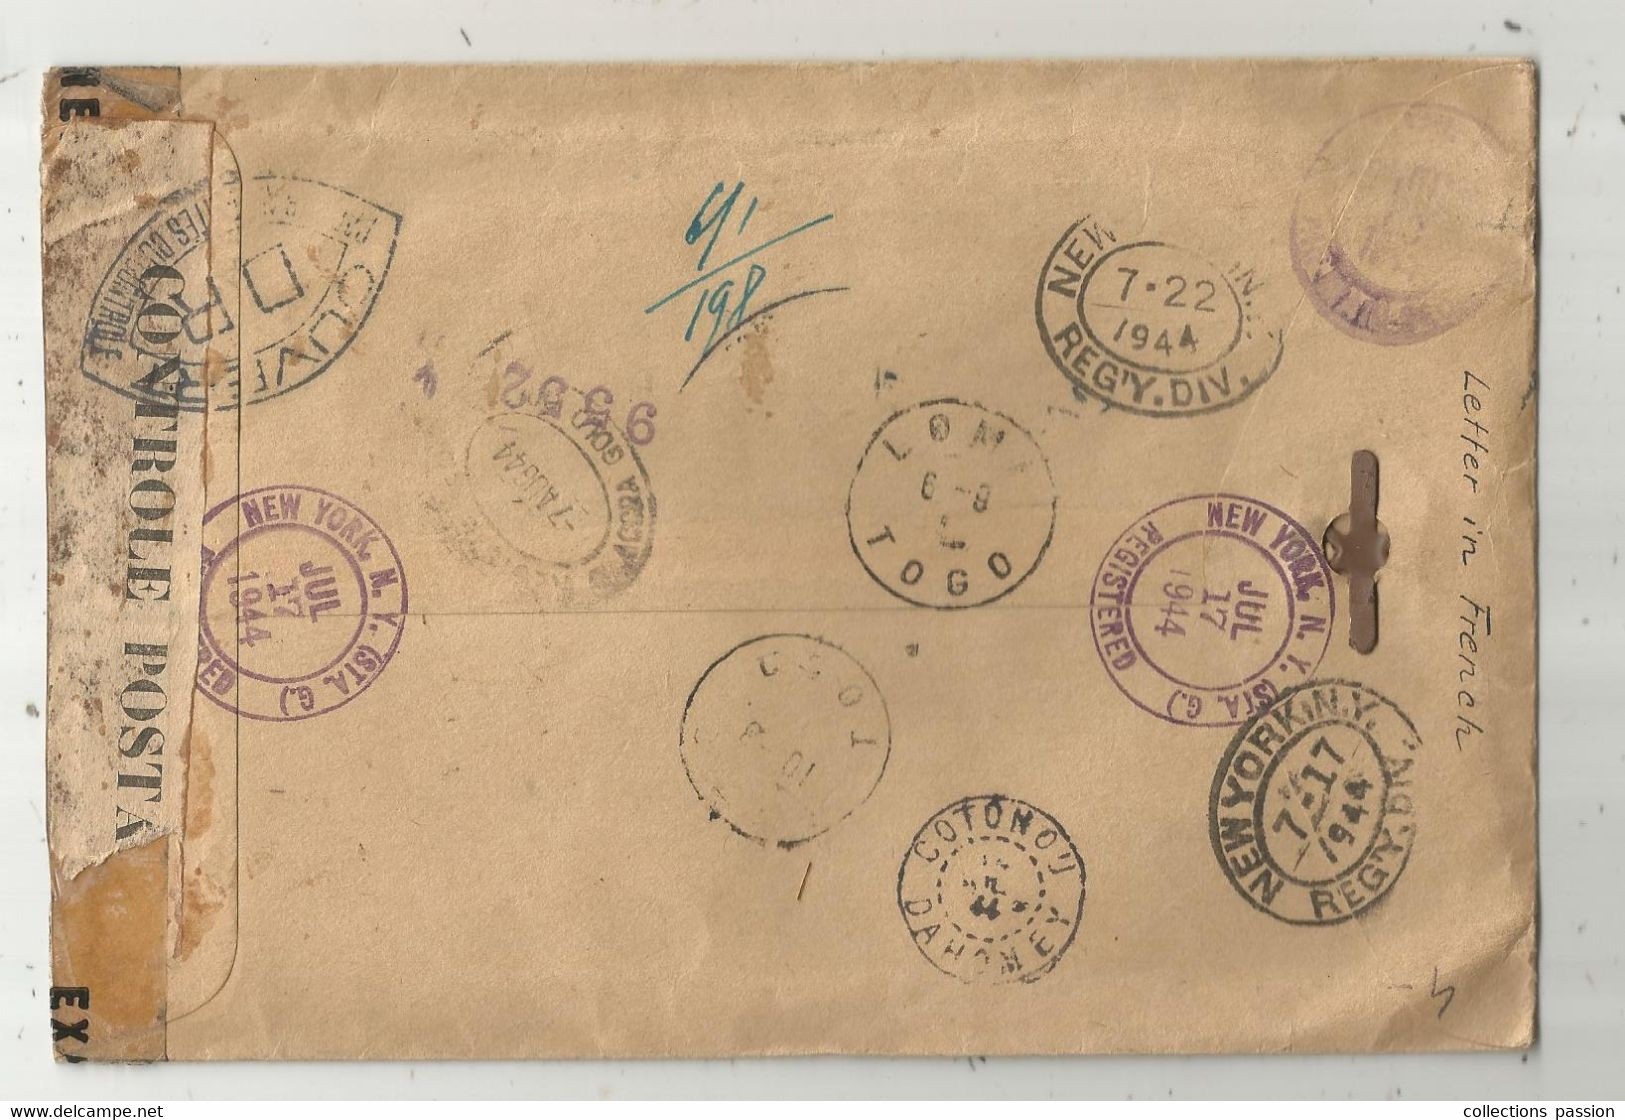 Lettre , Registered , NEW YORK , COTONOU DAHOMEY , LOME TOGO , Controle Postal ,ouvert, 1944 , Frais Fr 1.95 E - Marcofilia